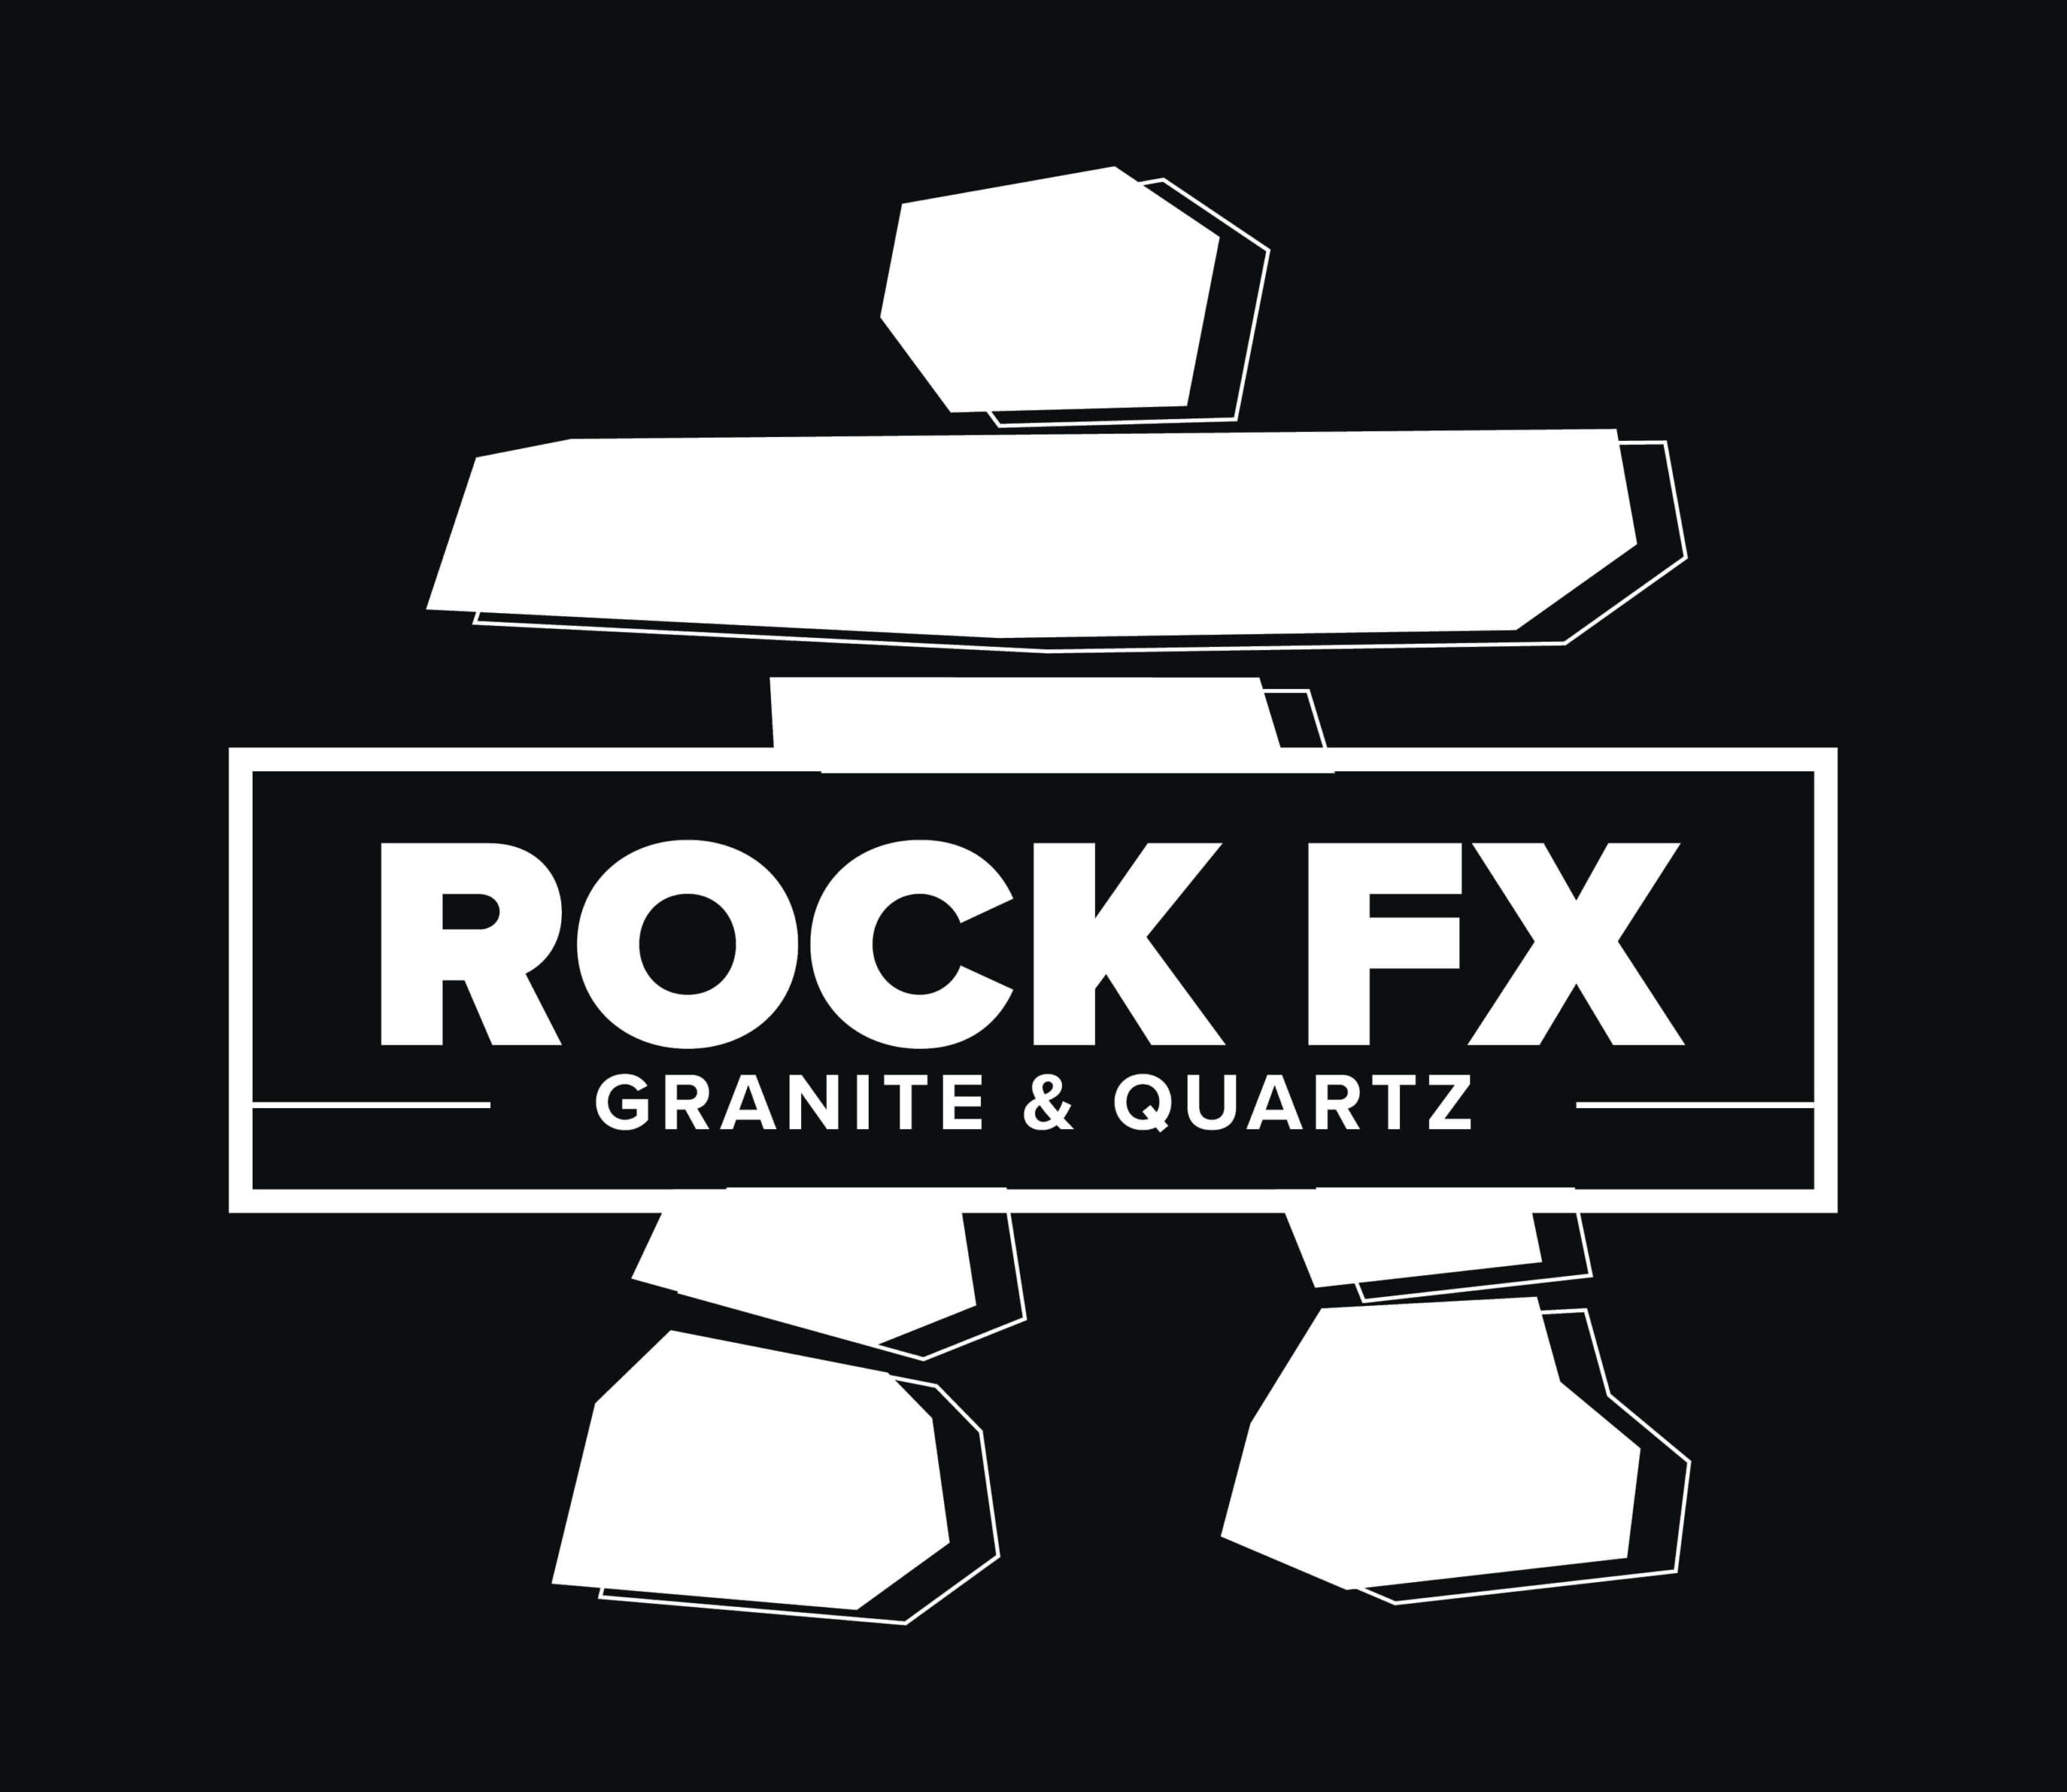 Full white Rock FX logo